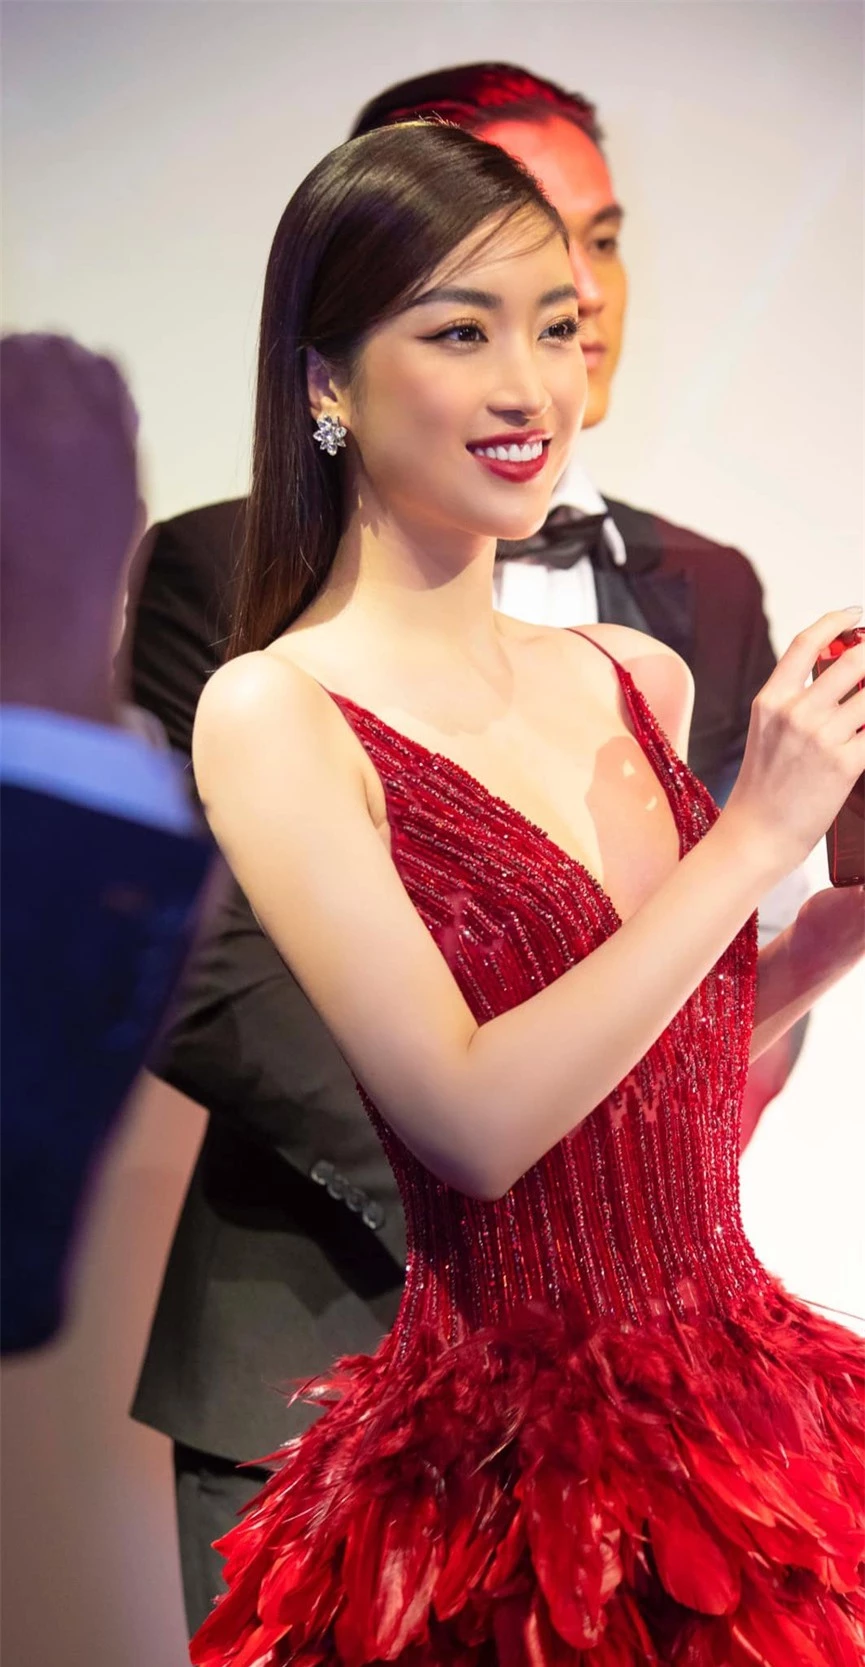 Diện váy xẻ cao, Hoa hậu Đỗ Mỹ Linh khoe chân dài miên man cực nóng bỏng  - ảnh 8